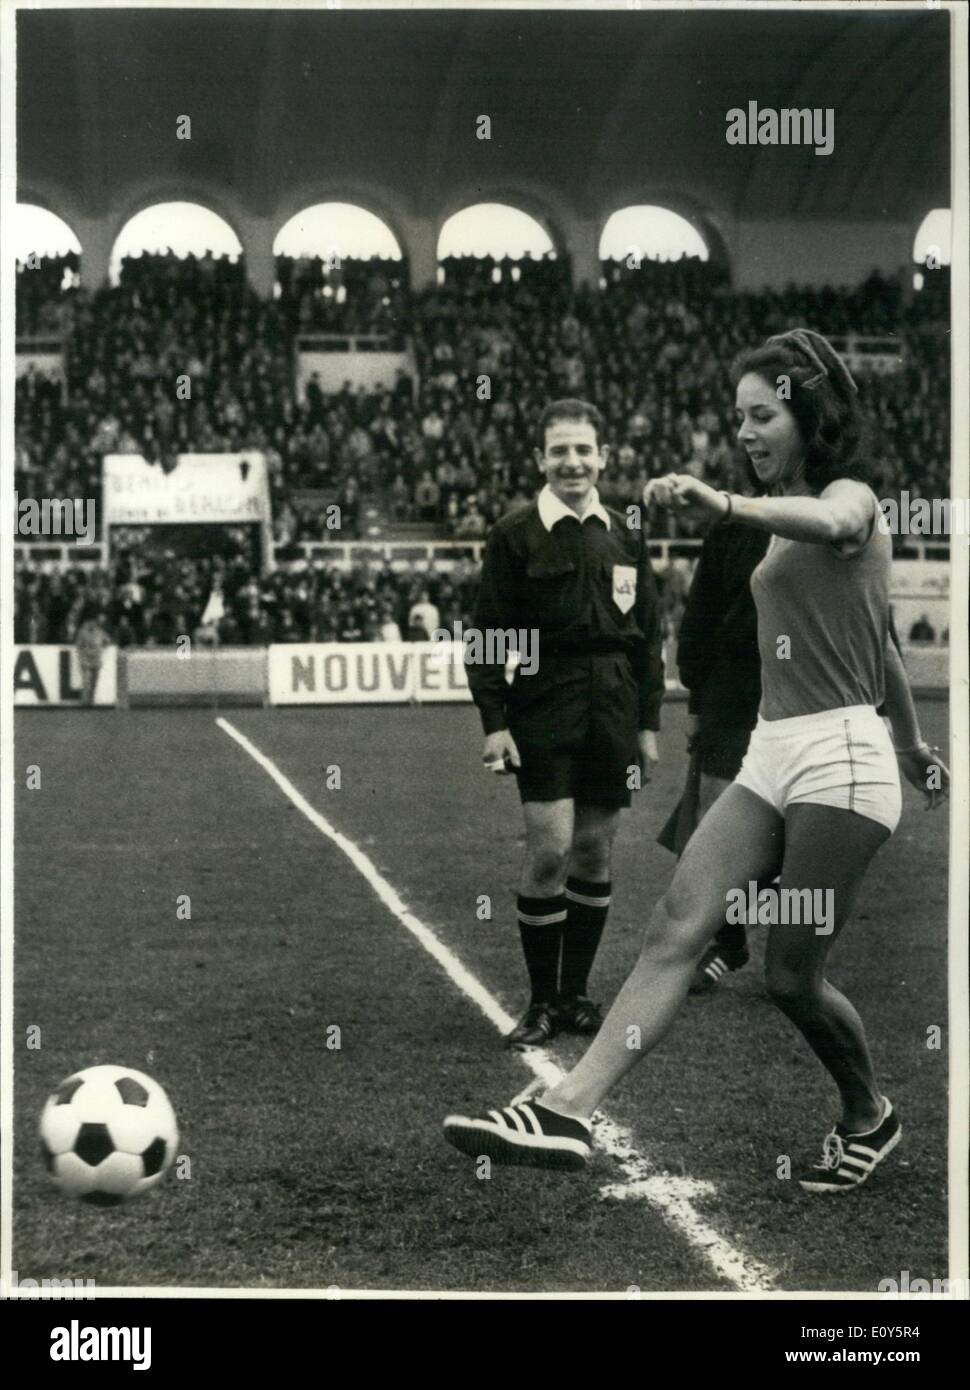 11. November 1968 - Gold Medallist gibt "Kick-Off" zu Fußball Spiel Colette Besson, der Mädchen-Athlet aus Bordeaux-Gewinner der Goldmedaille Mexiko, gab ein Kick-off für dem Fußballspiel Bordeaux V. Nantes in Bordeaux. OPS: - Colette Besson das Eröffnungsspiel. Stockfoto